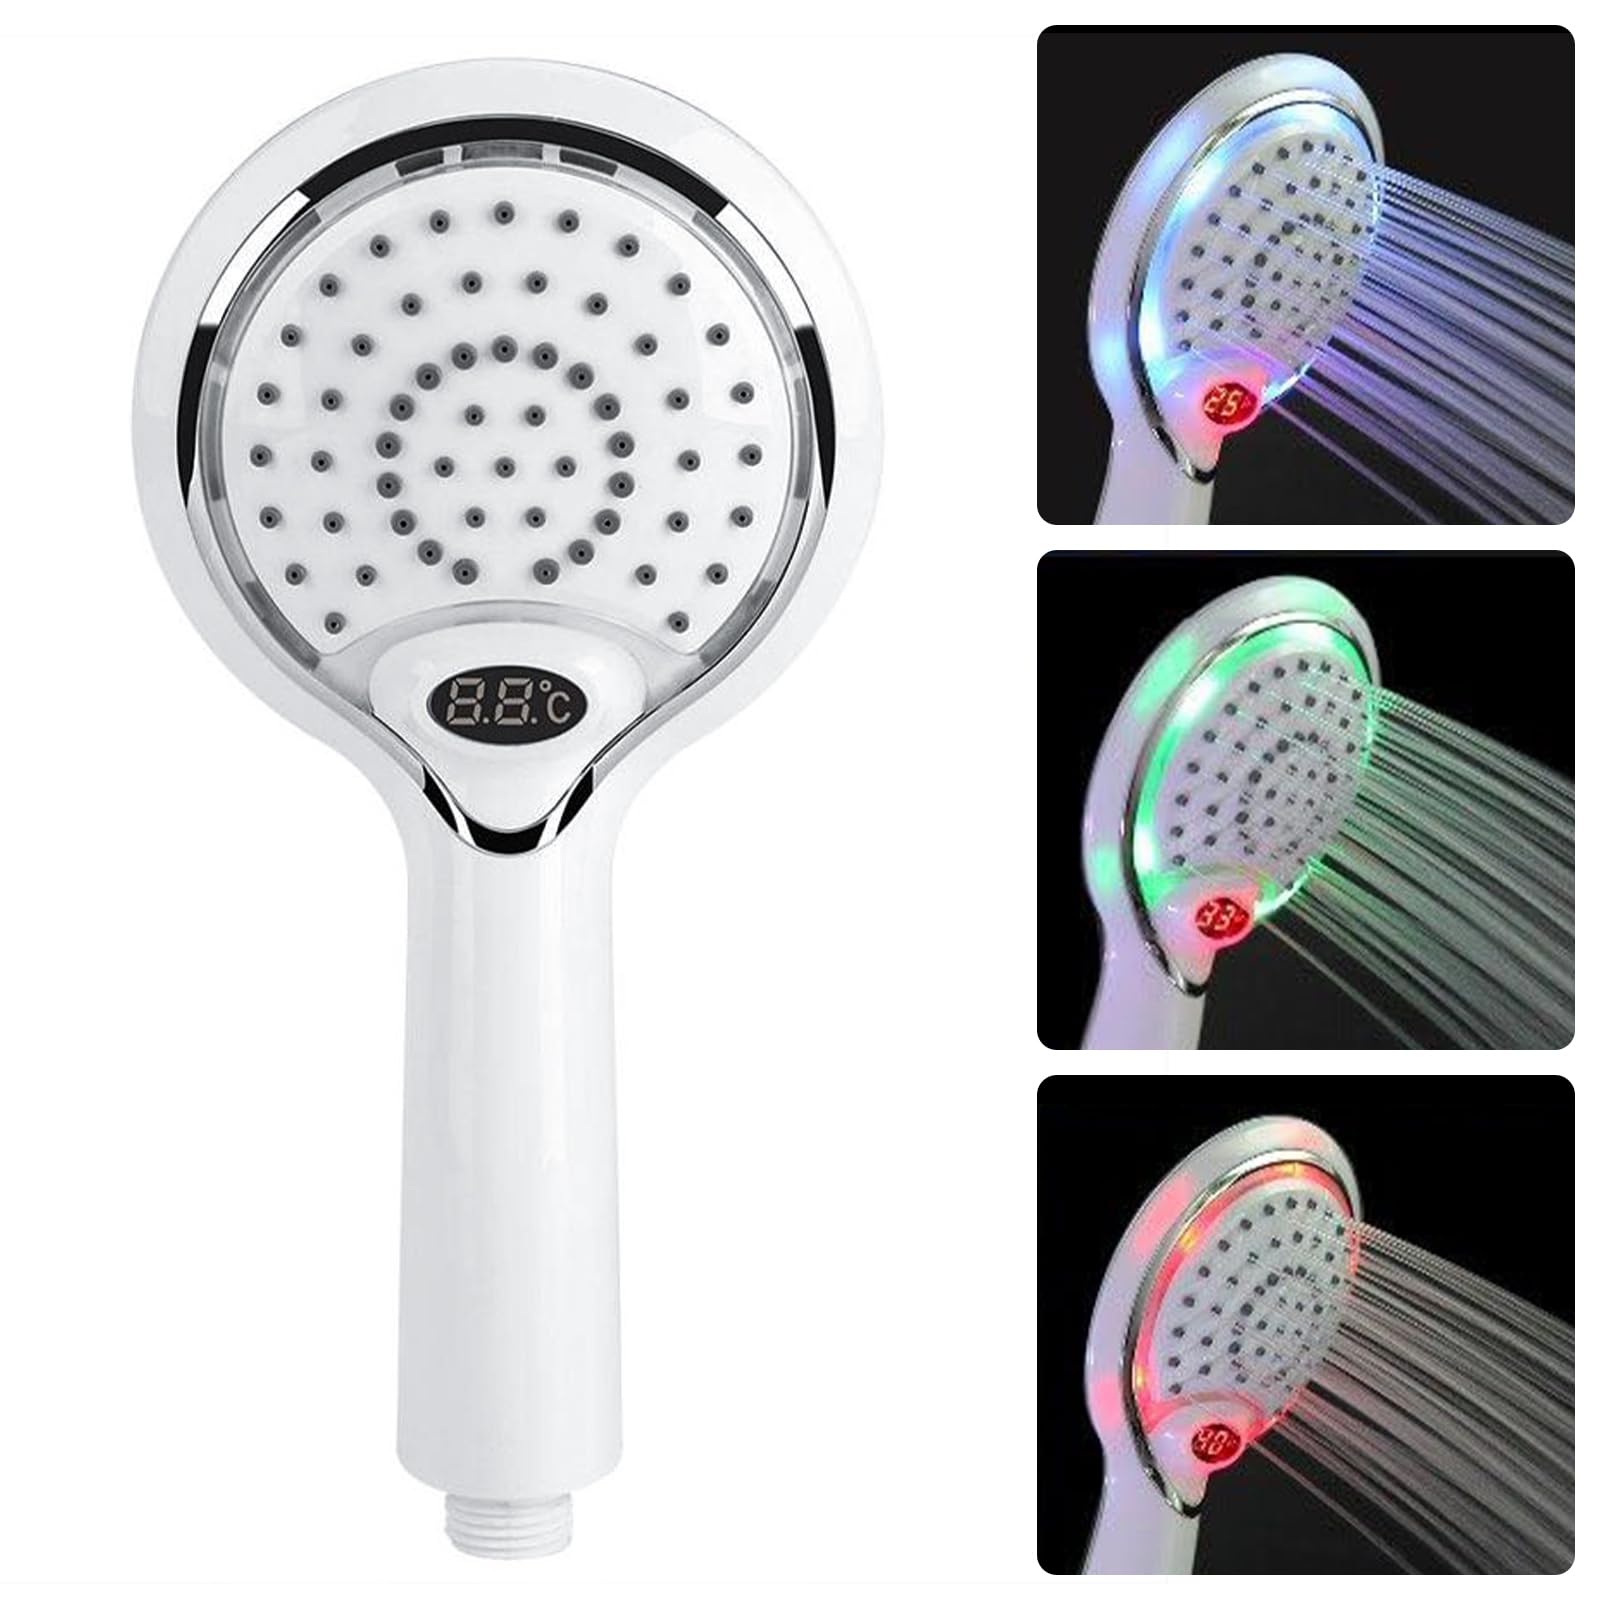 3 Farbe LED Handheld Dusche Spray Kopf mit Digitale Temperaturanzeige, Wasser Flow Powered ABS Chrome Finish für Badezimmer (Weiß)